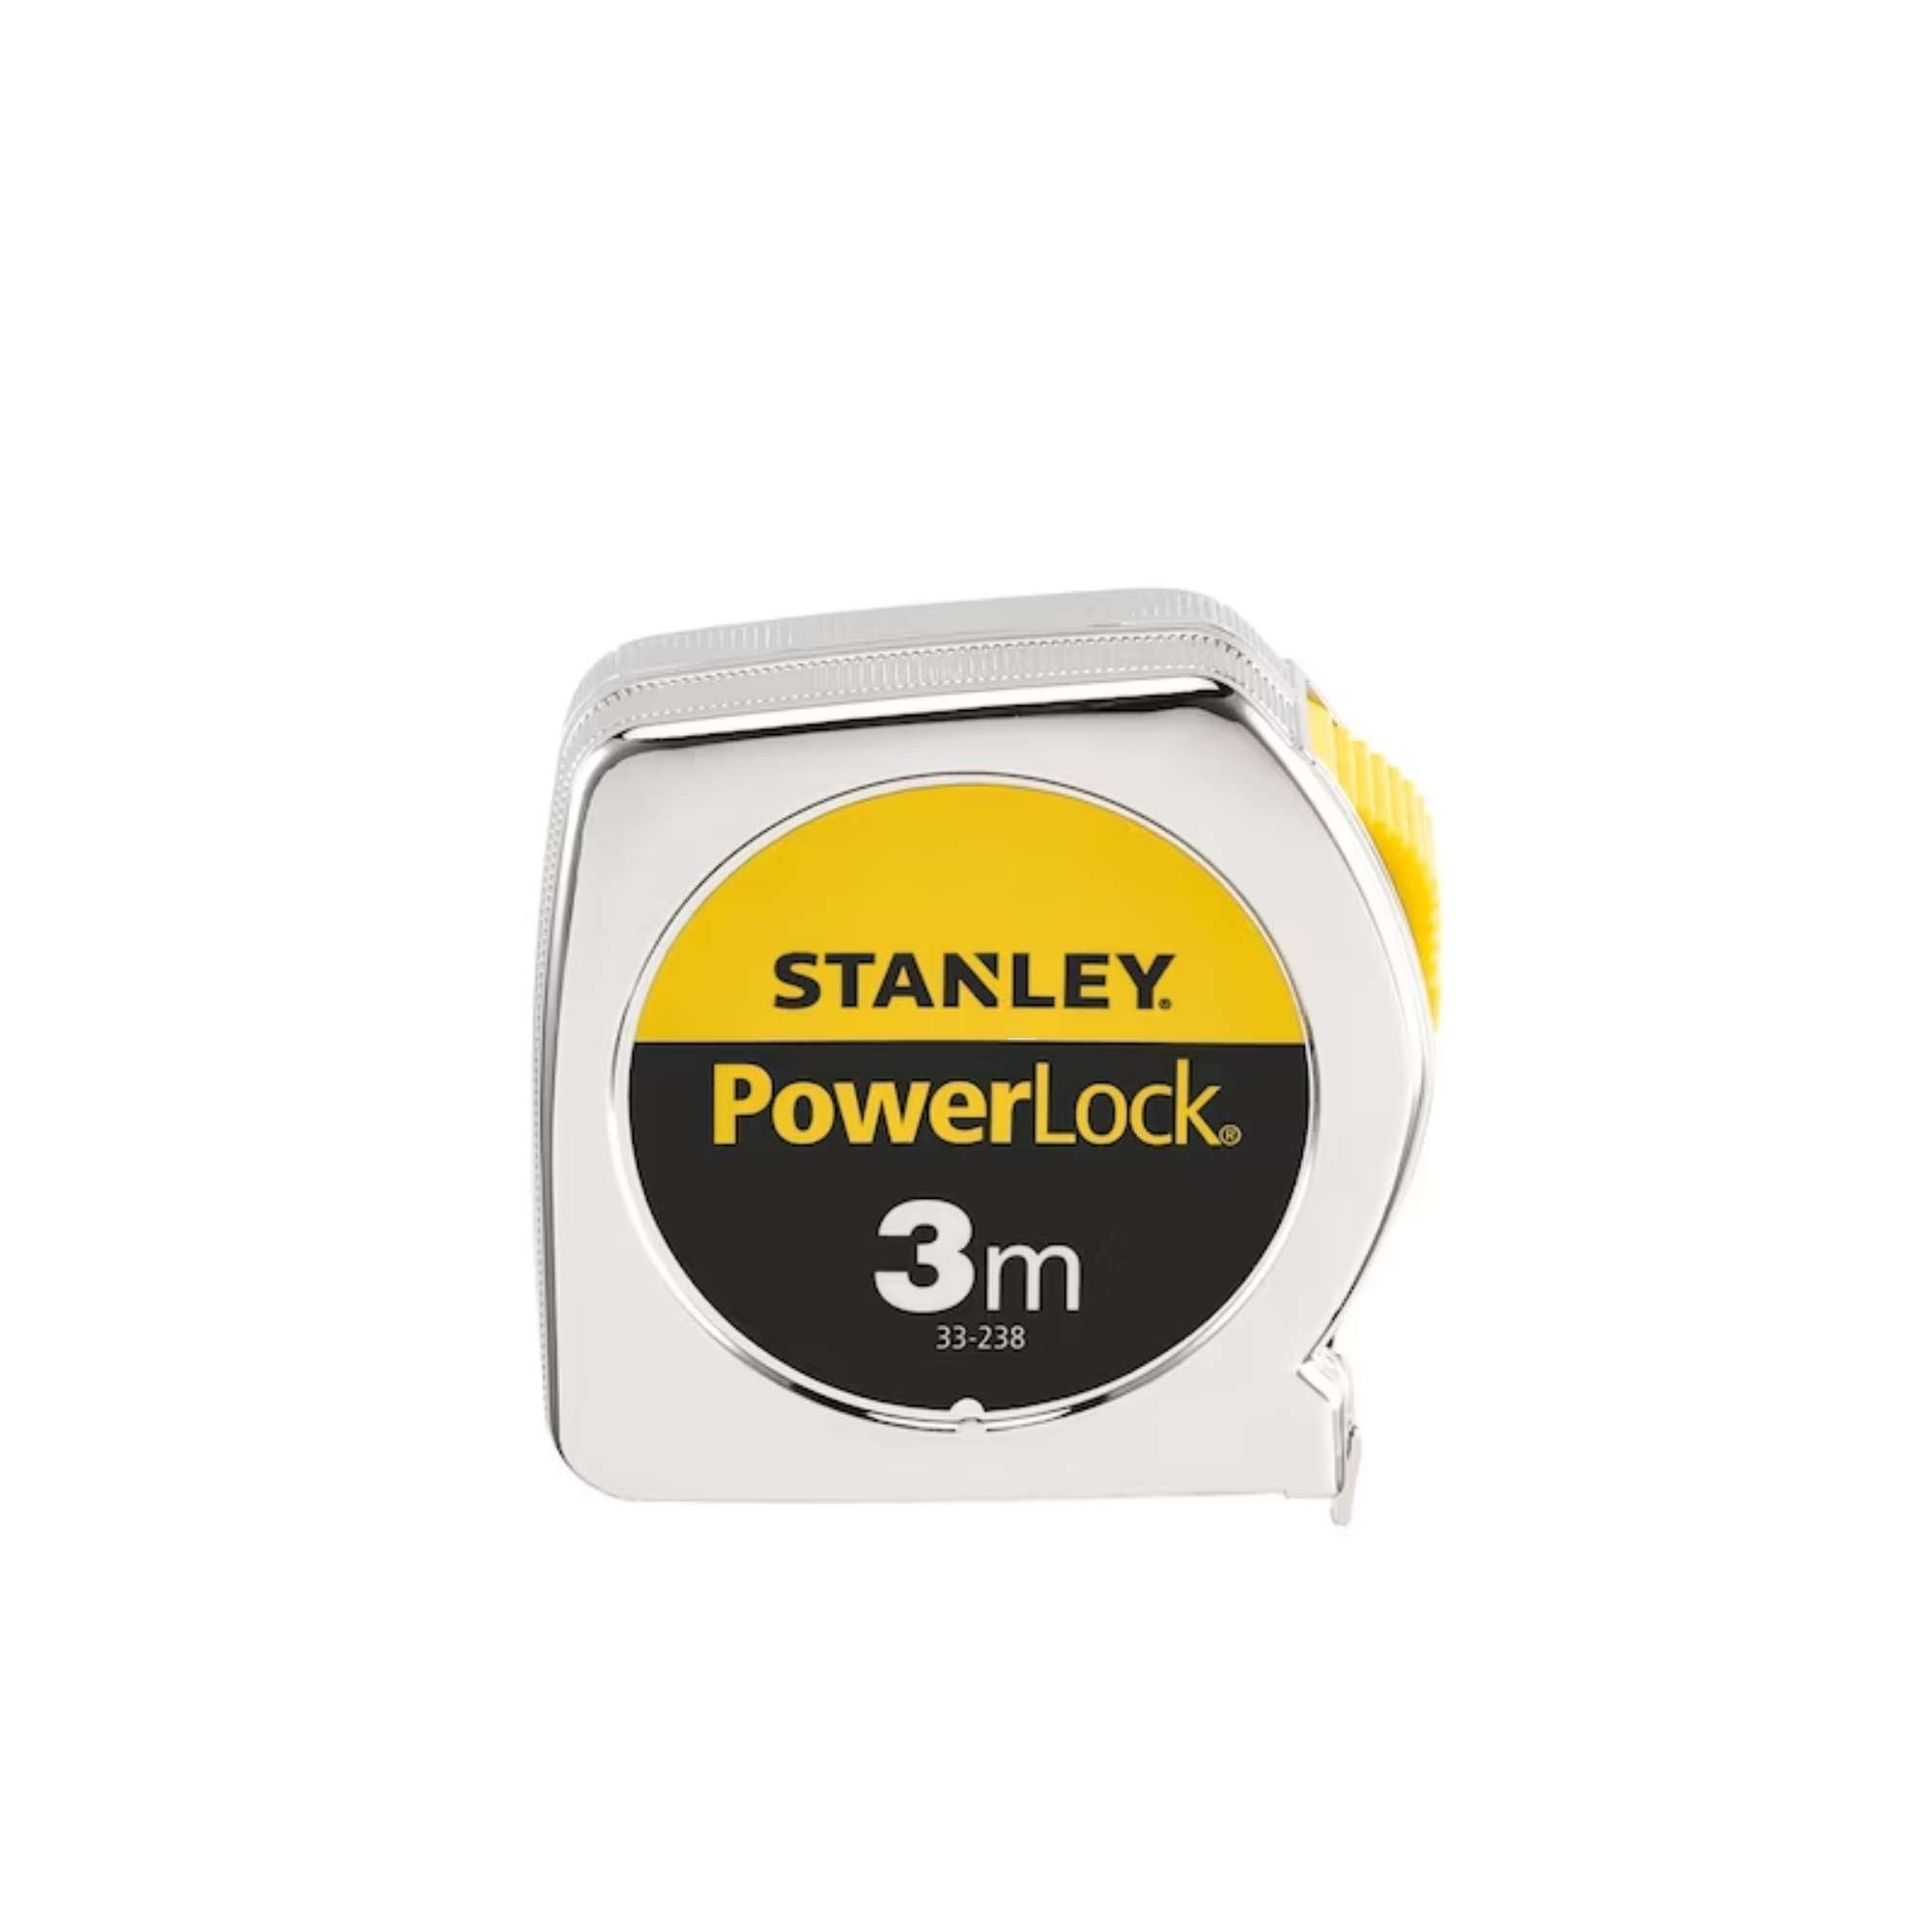 Flessometro Powerlock 3M cassa in plastica - Stanley 0-33-238